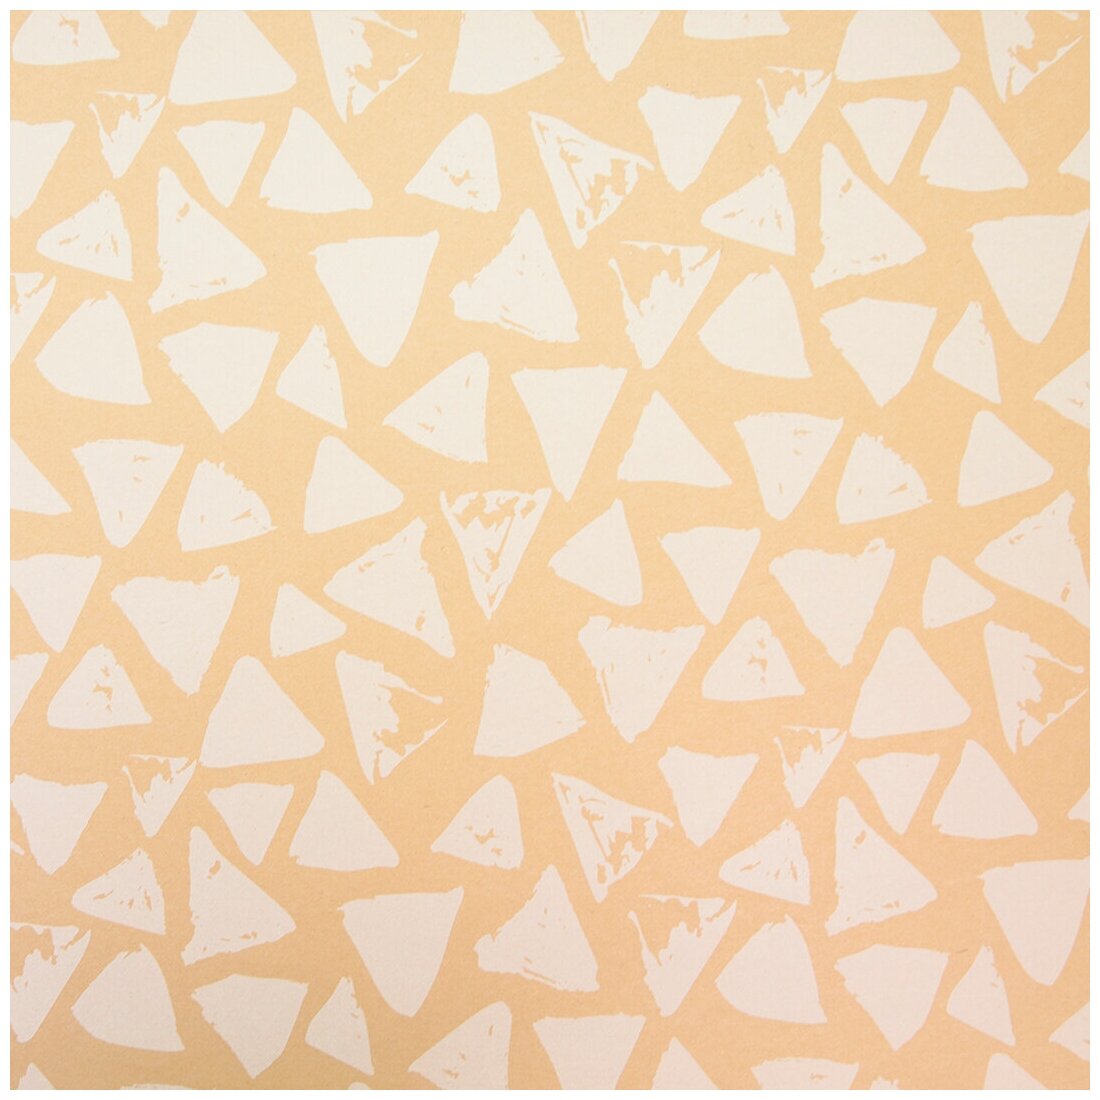 Упаковочная бумага, Крафт (0,7x1 м) Треугольники Люкс, Белый, 1 шт.